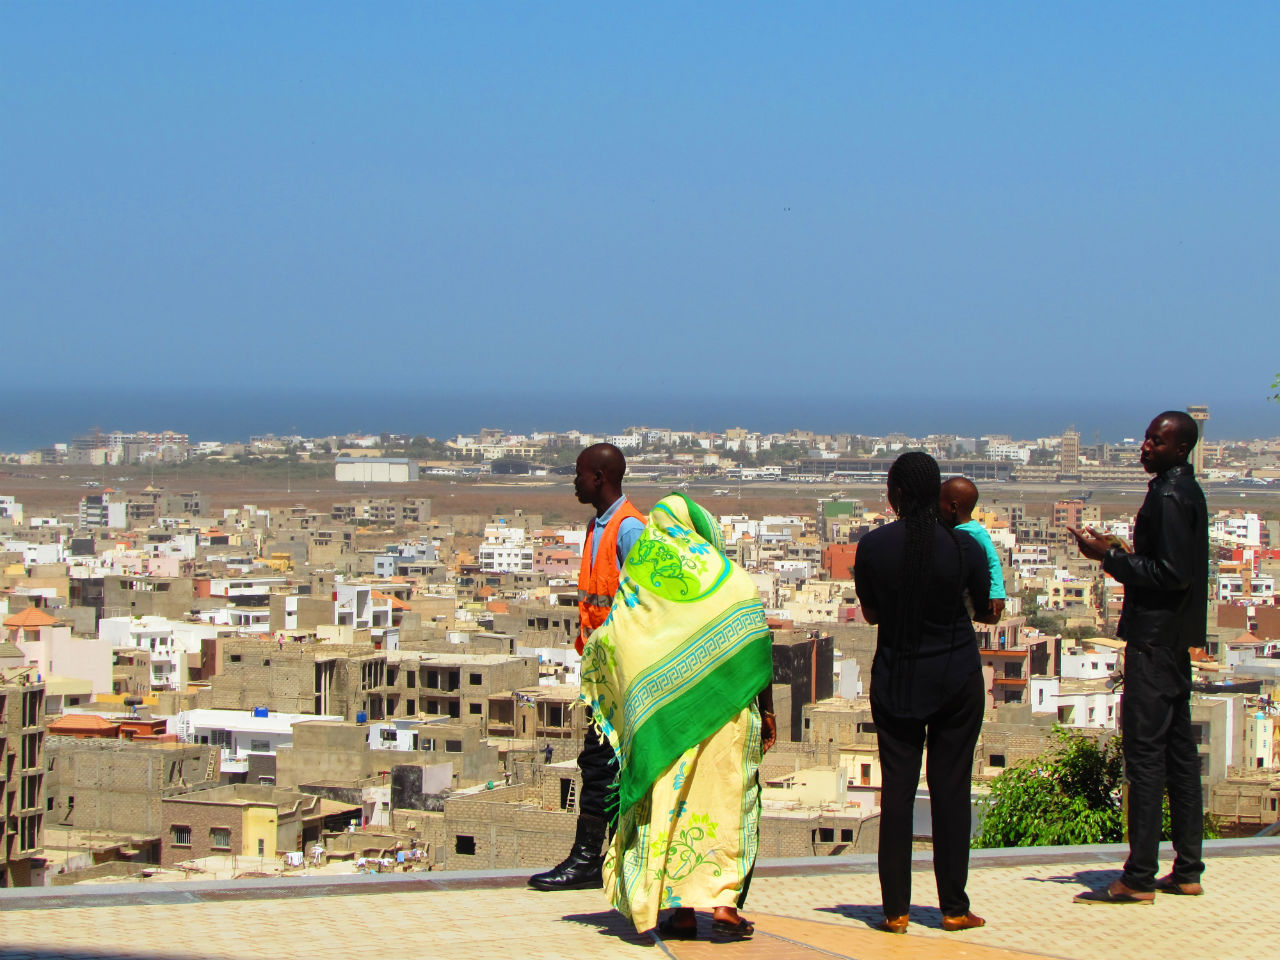 Эротический Монумент африканского возрождения. Маяк Мамеле Дакар, Сенегал